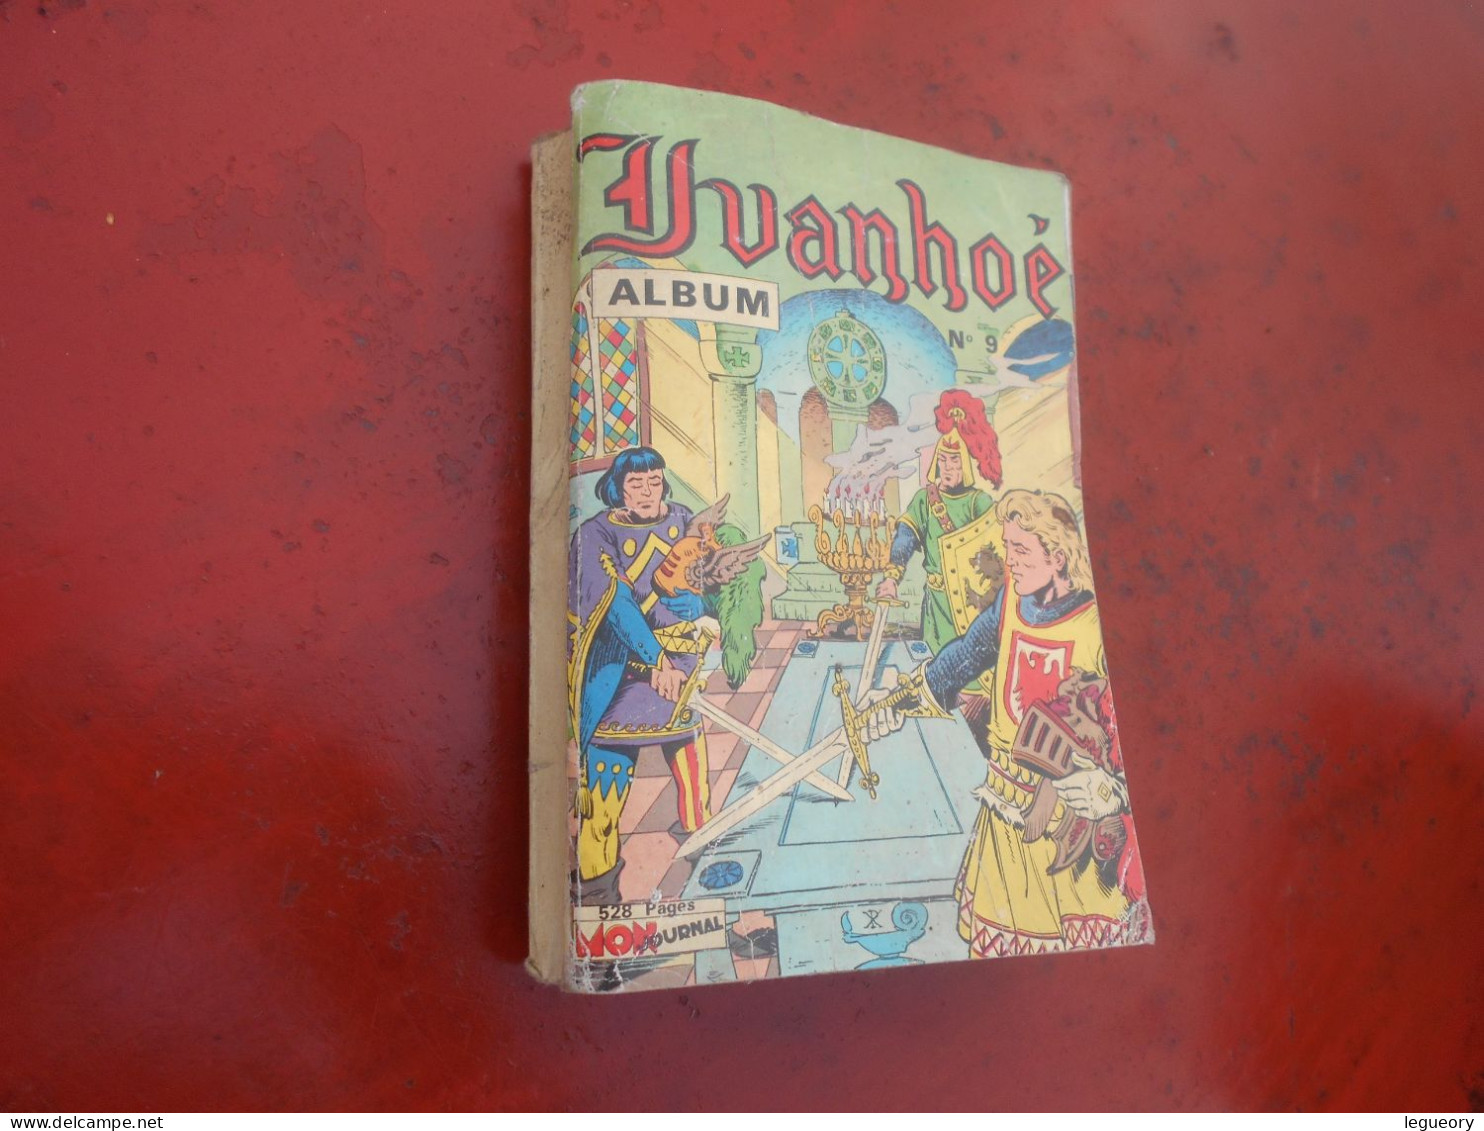 Ivanhoe   Album     N° 9 - Ivanohe